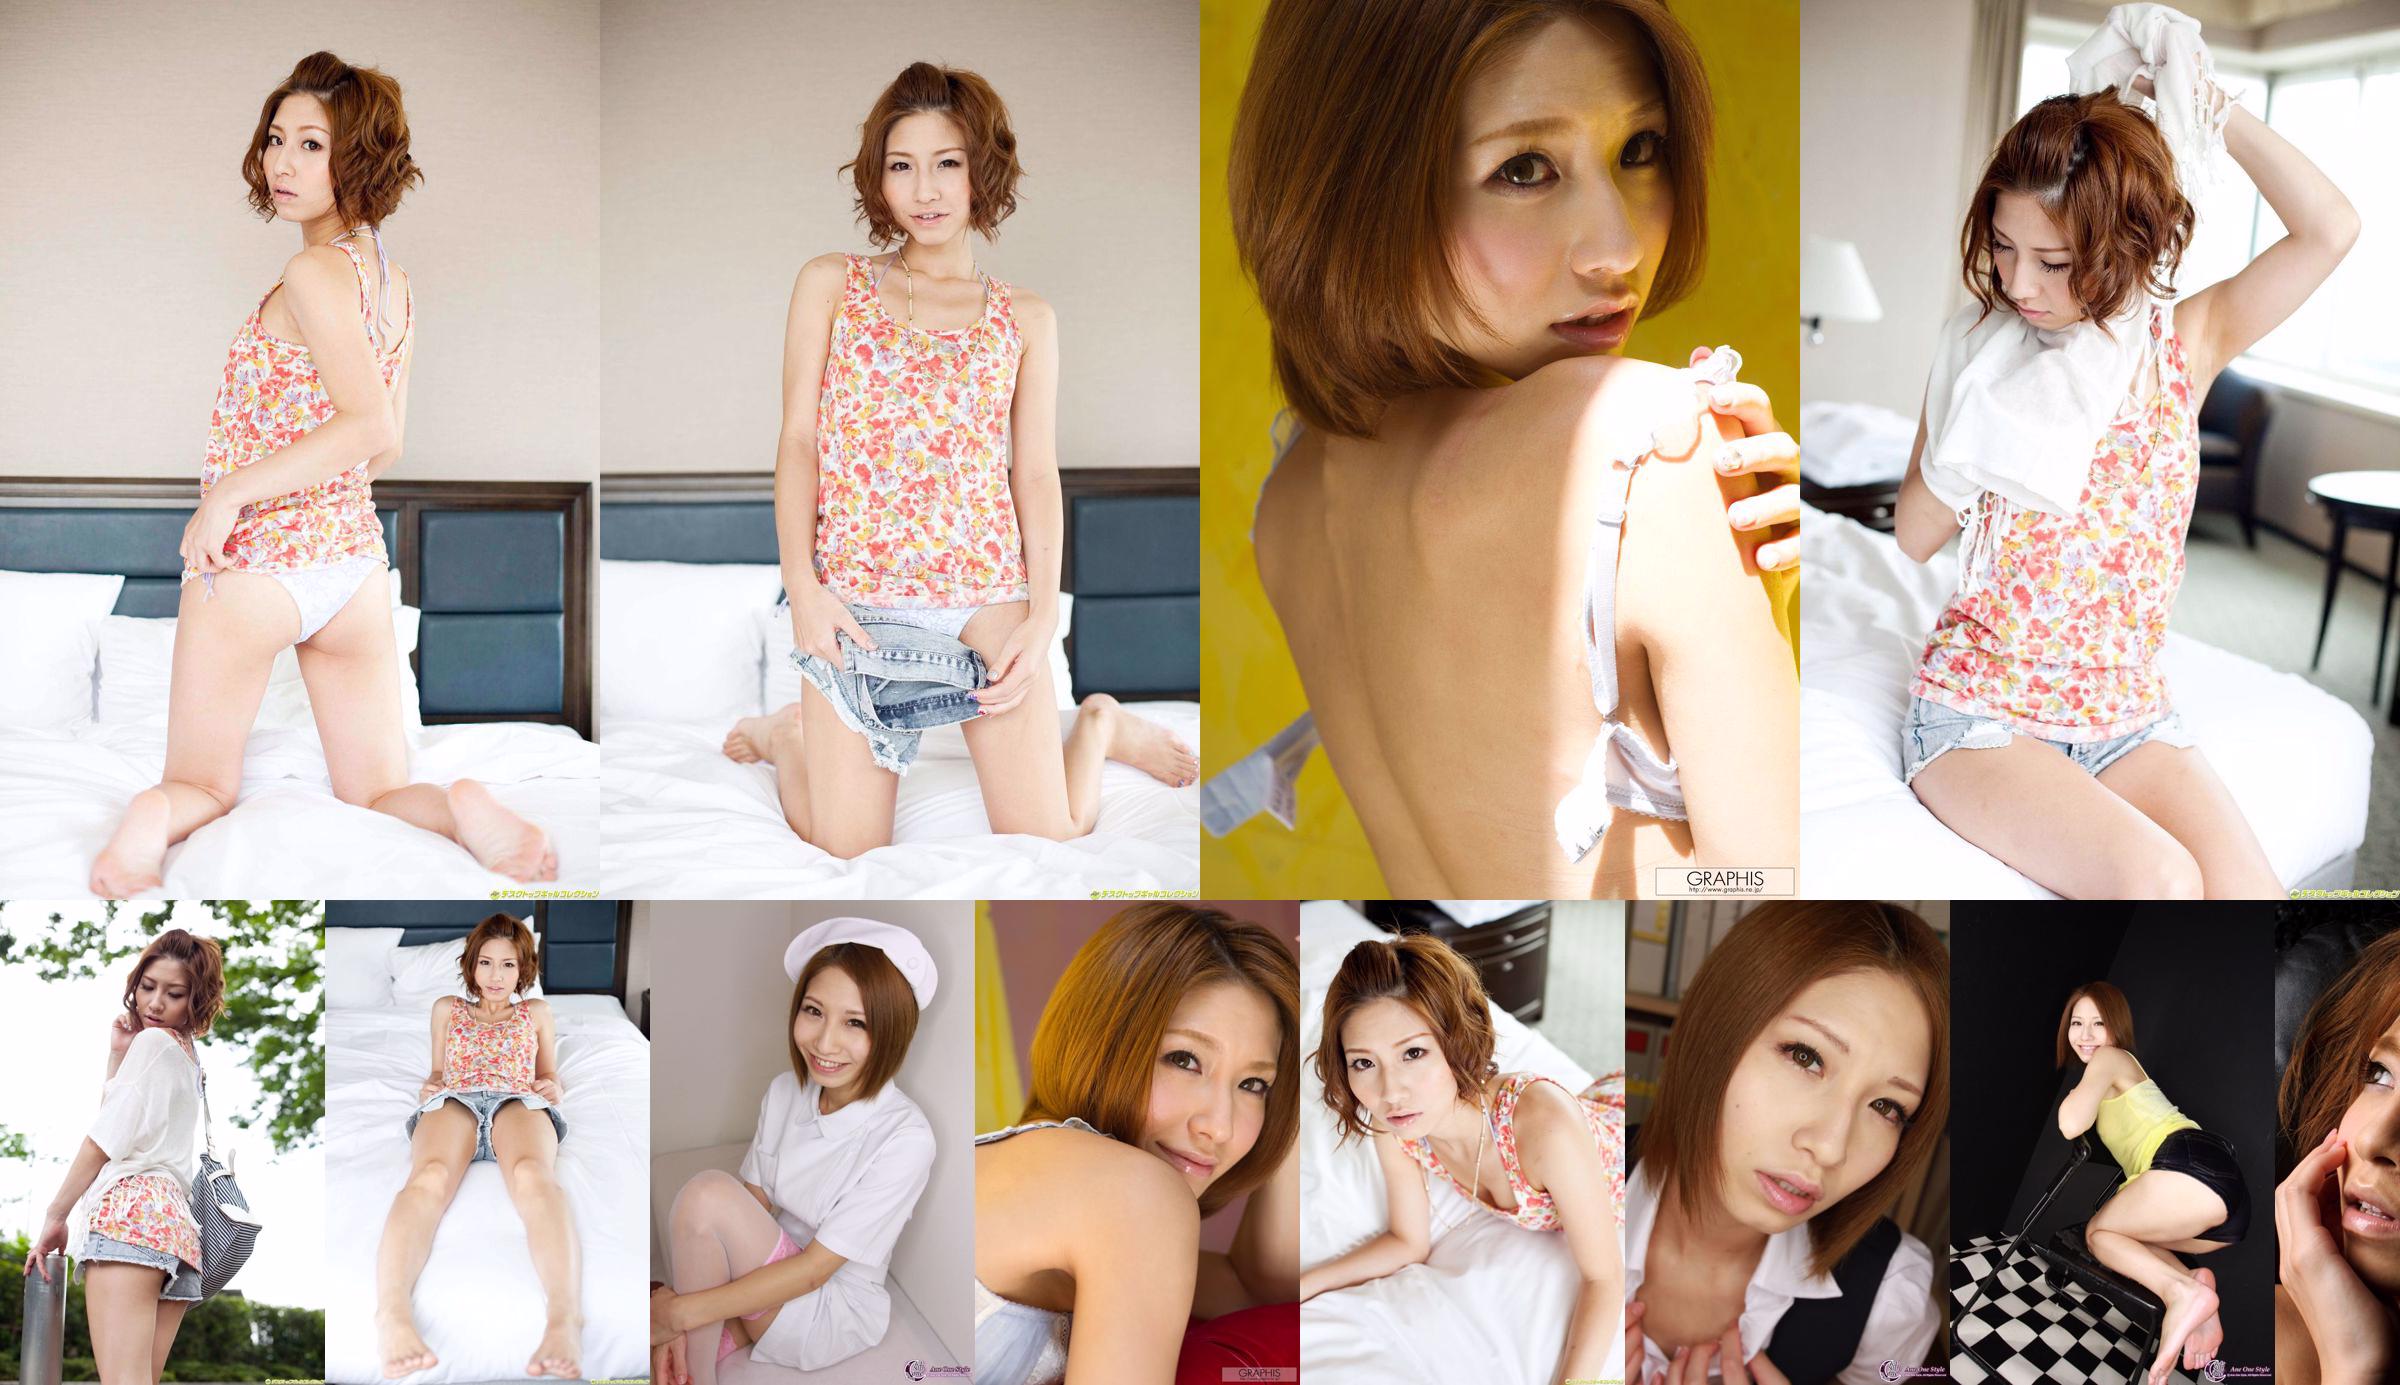 [X-City] Ane One Style No.63 Mizuki りさ / Mizuki Risa Risa Mizuki No.fb4c33 Pagina 3